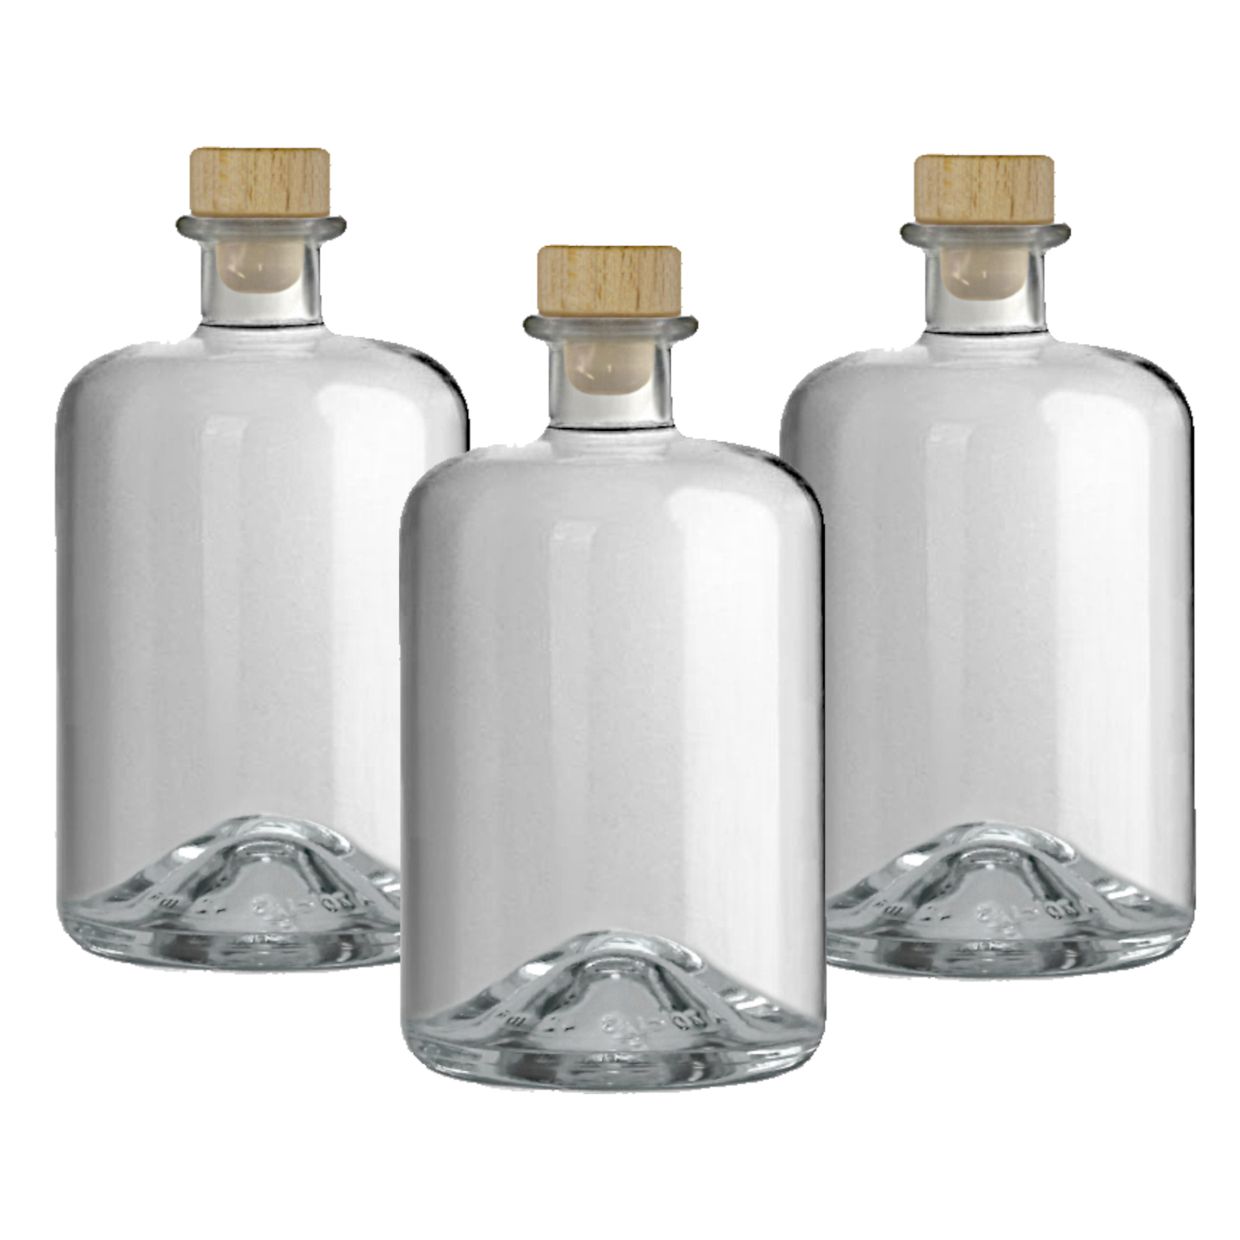 Apothekerflaschen 700ml Glas Flaschen leer Essigflaschen Ölflaschen  Schnapsflaschen Likörflaschen zum selbst befüllen | Geniess-Bar!